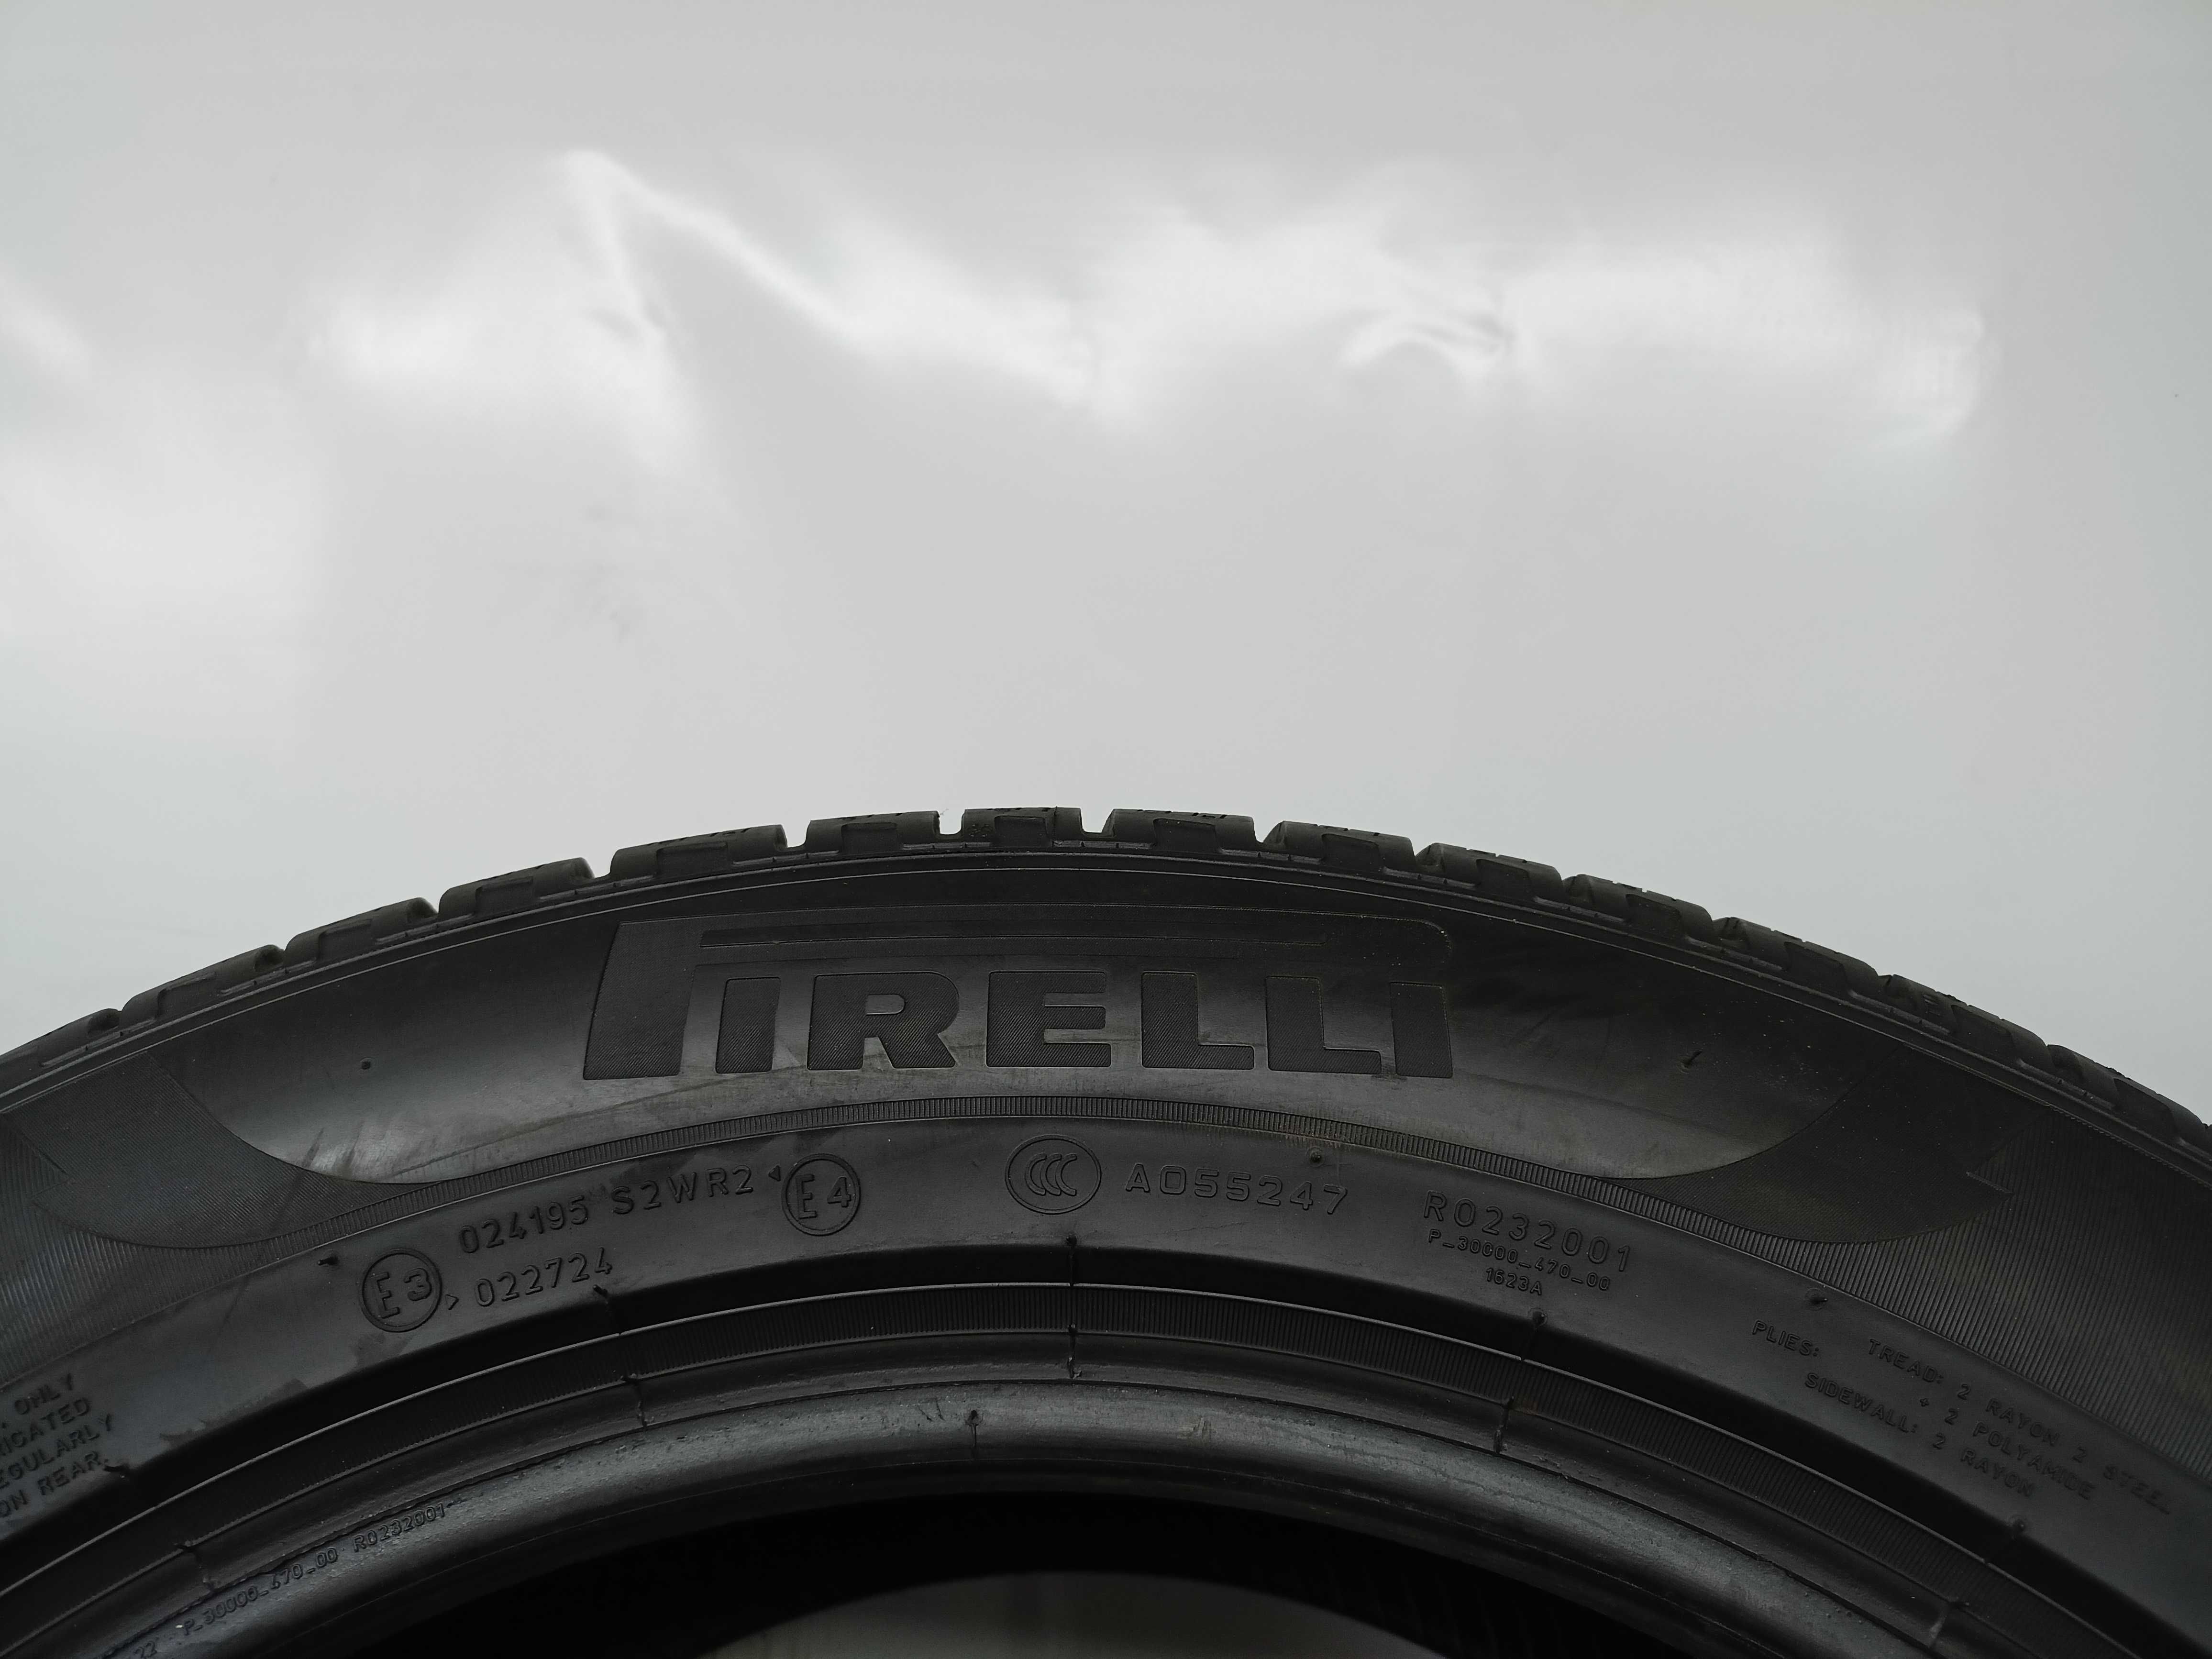 Pirelli Scorpion 285/45/19 255/50/19 2021/22rok 2*5,7mm 2*7,6mm (1786)